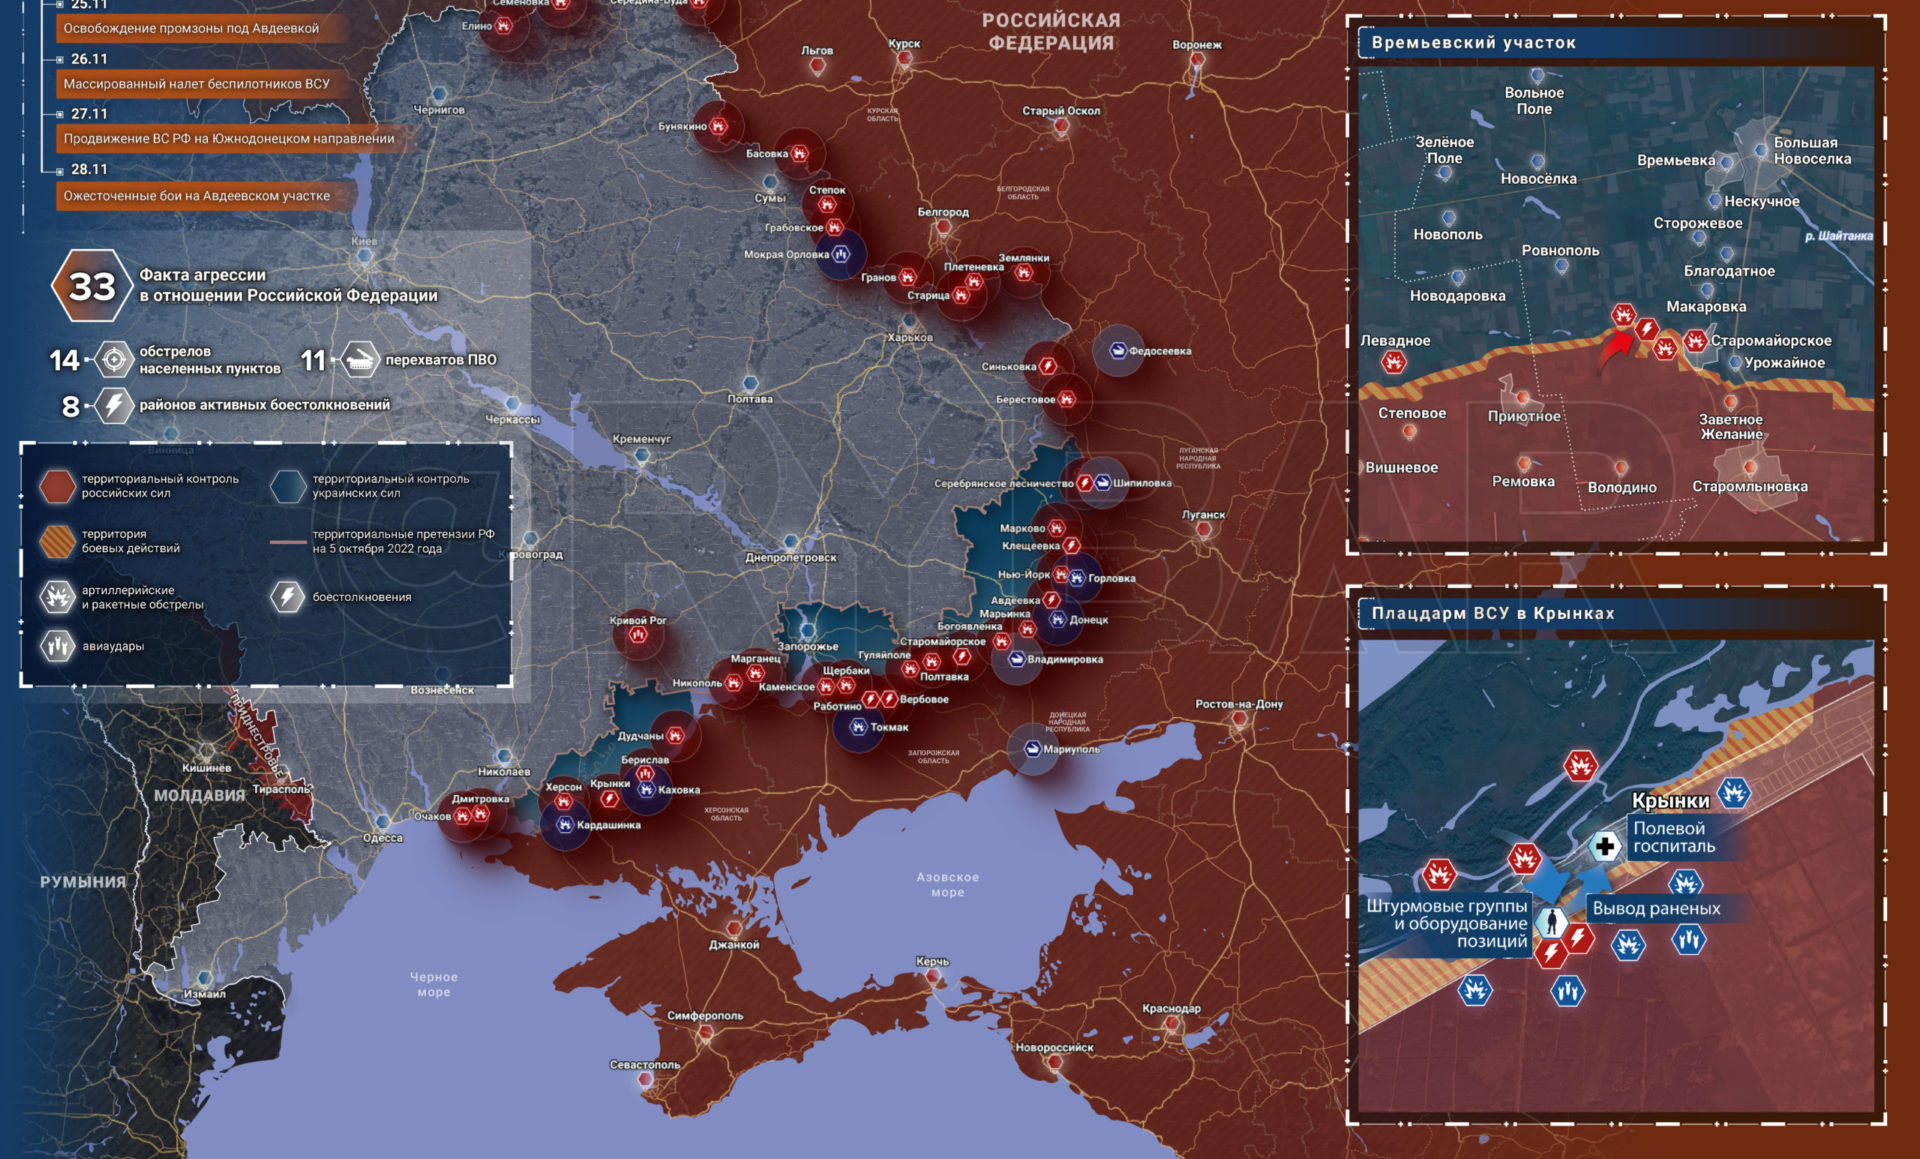 «Наступление продолжается!»: Карта боевых действий 30 ноября 2023 на Украине — последние новости где идут бои ВС РФ сегодня. Спецоперация России сейчас 30.11.2023